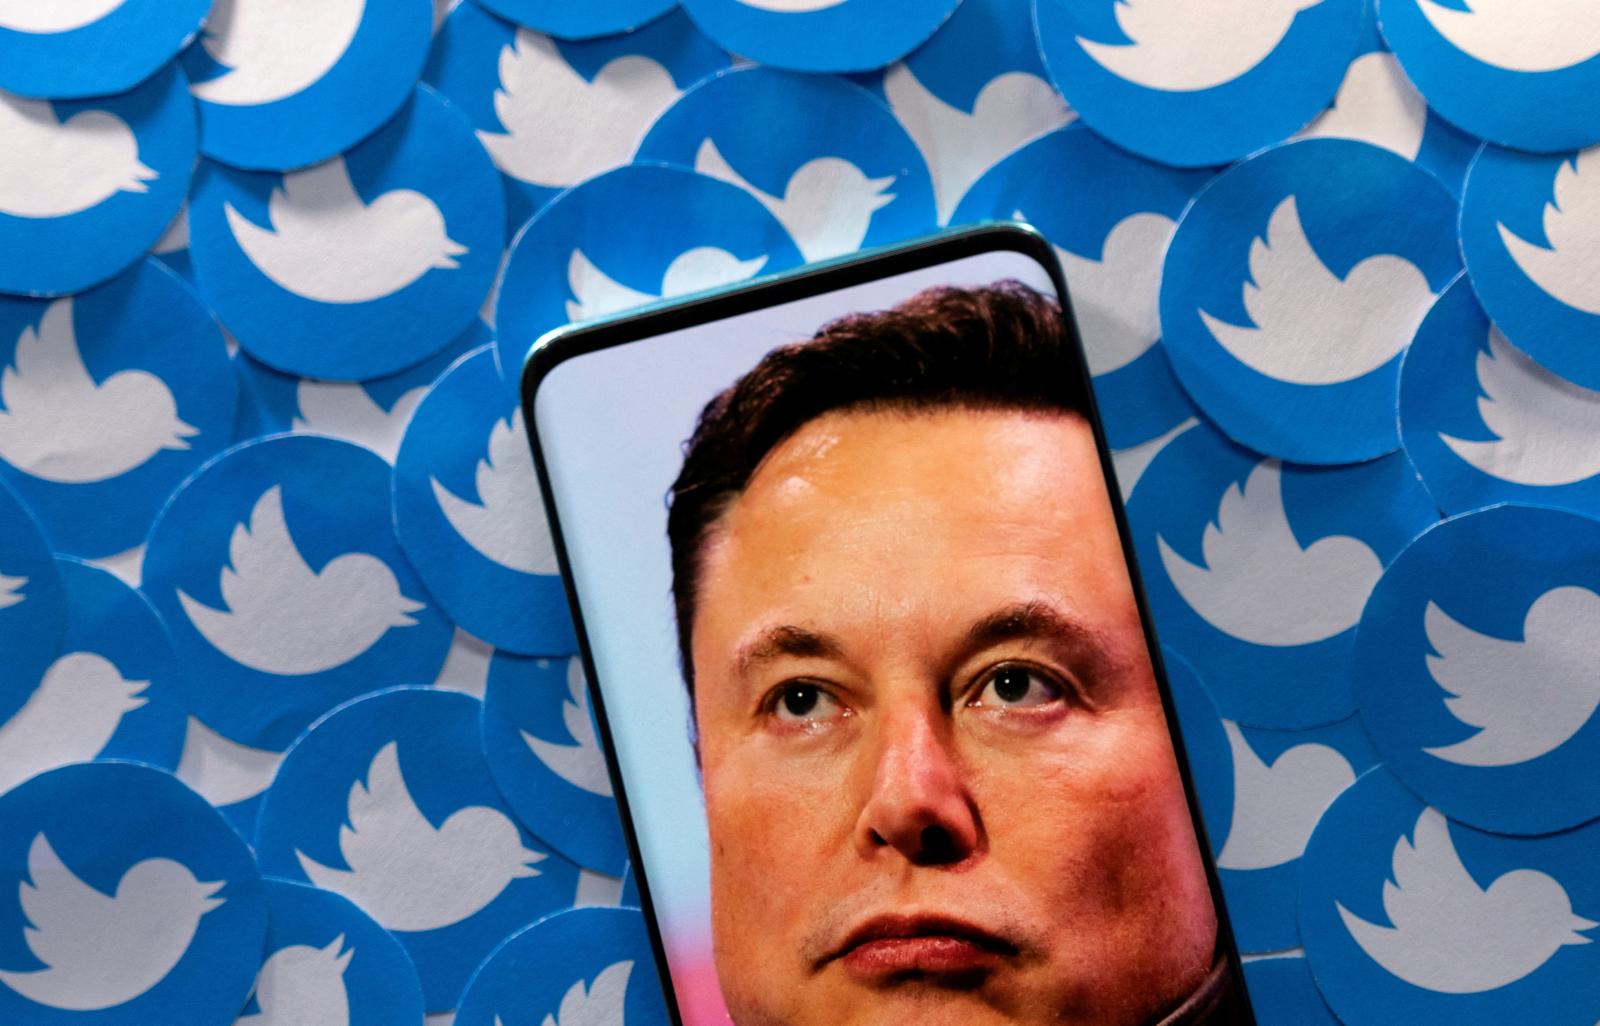 Gần một triệu người dùng Twitter đã hủy kích hoạt tài khoản kể từ khi Elon Musk tiếp quản nền tảng